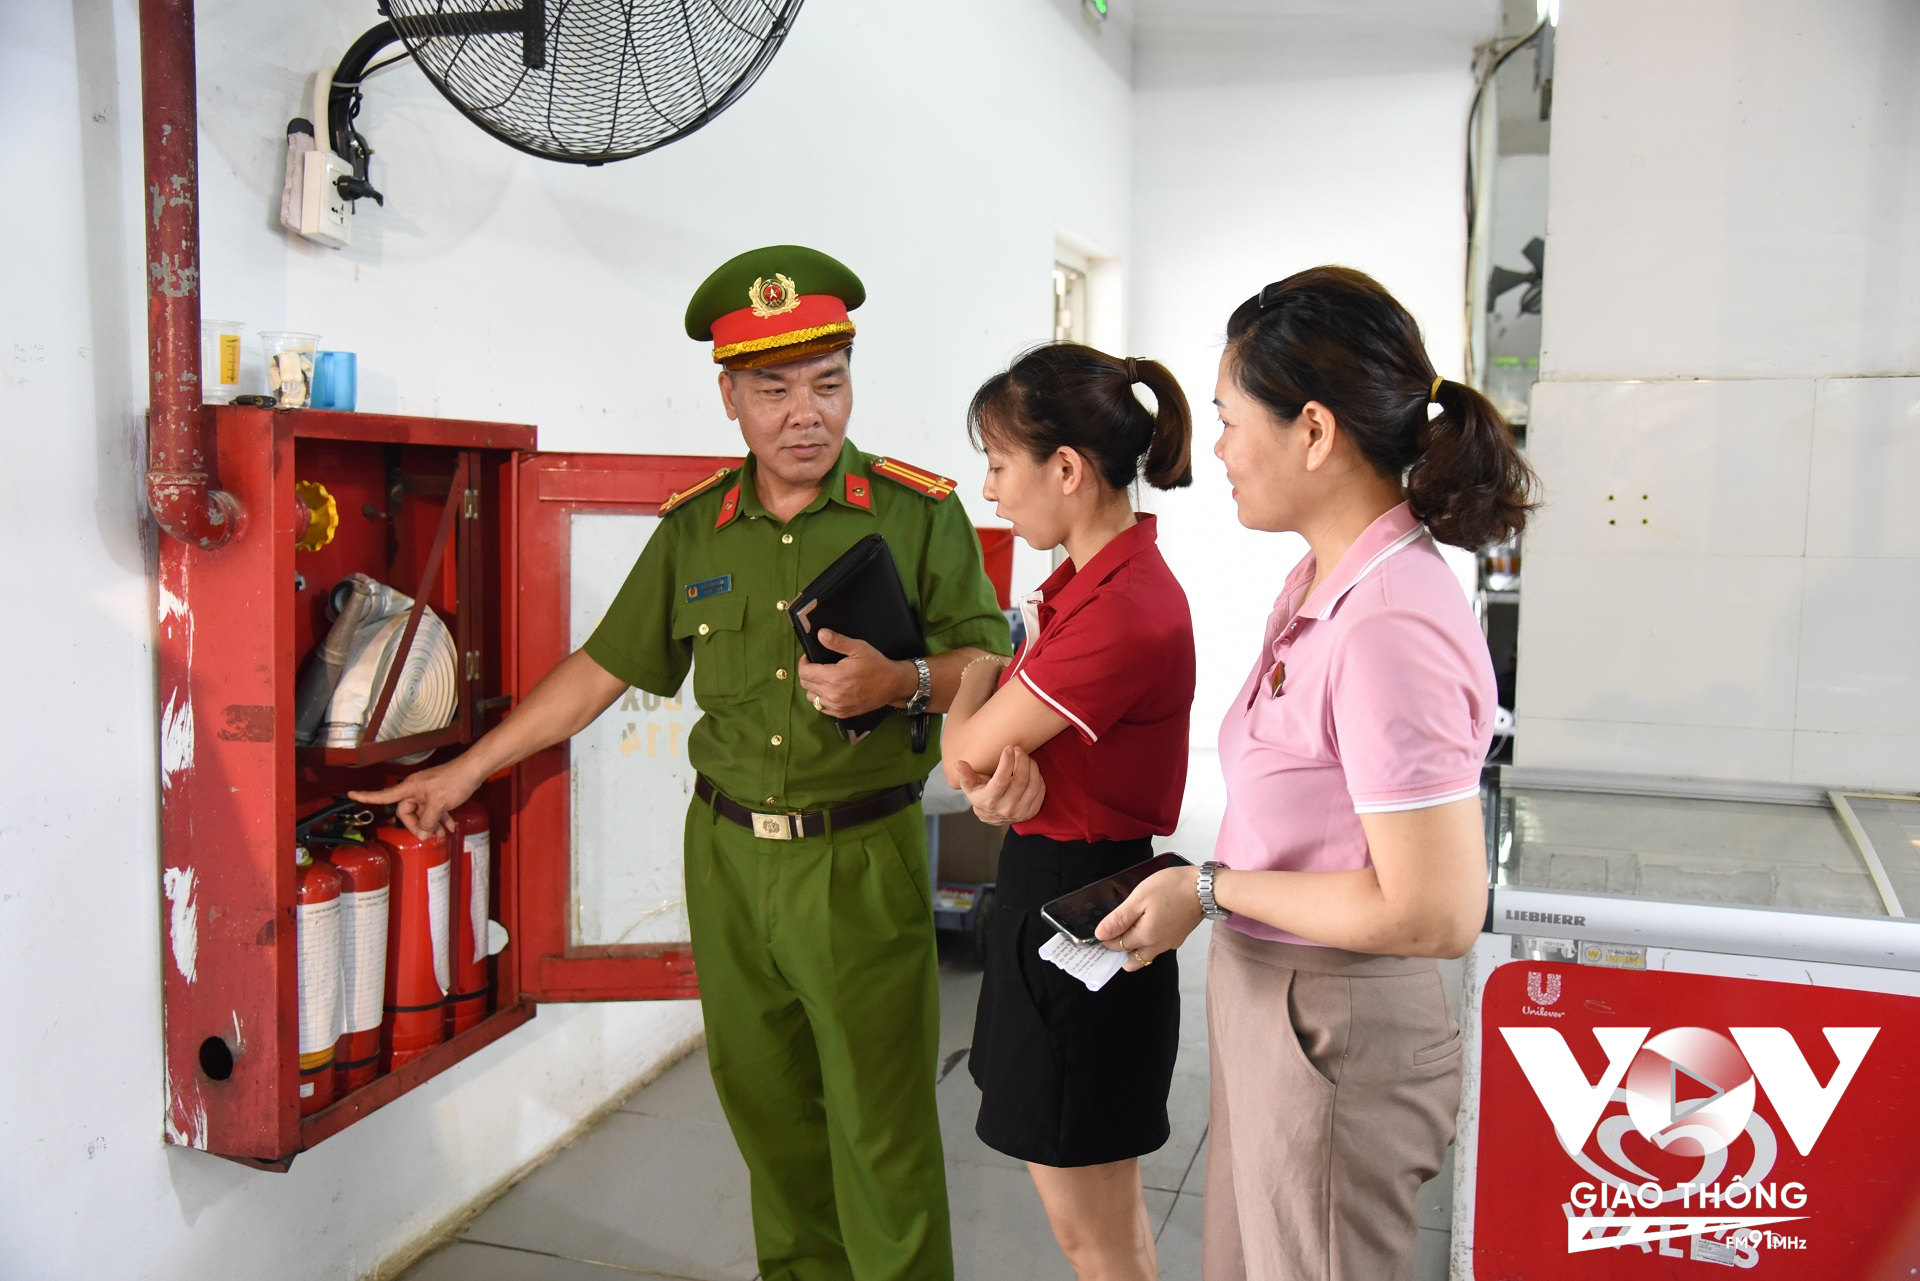 Lực lượng chức năng hướng dẫn sử dụng các thiết bị PCCC tại chỗ cho các tiểu thương kinh doanh tại chợ Nghệ (thị xã Sơn Tây)